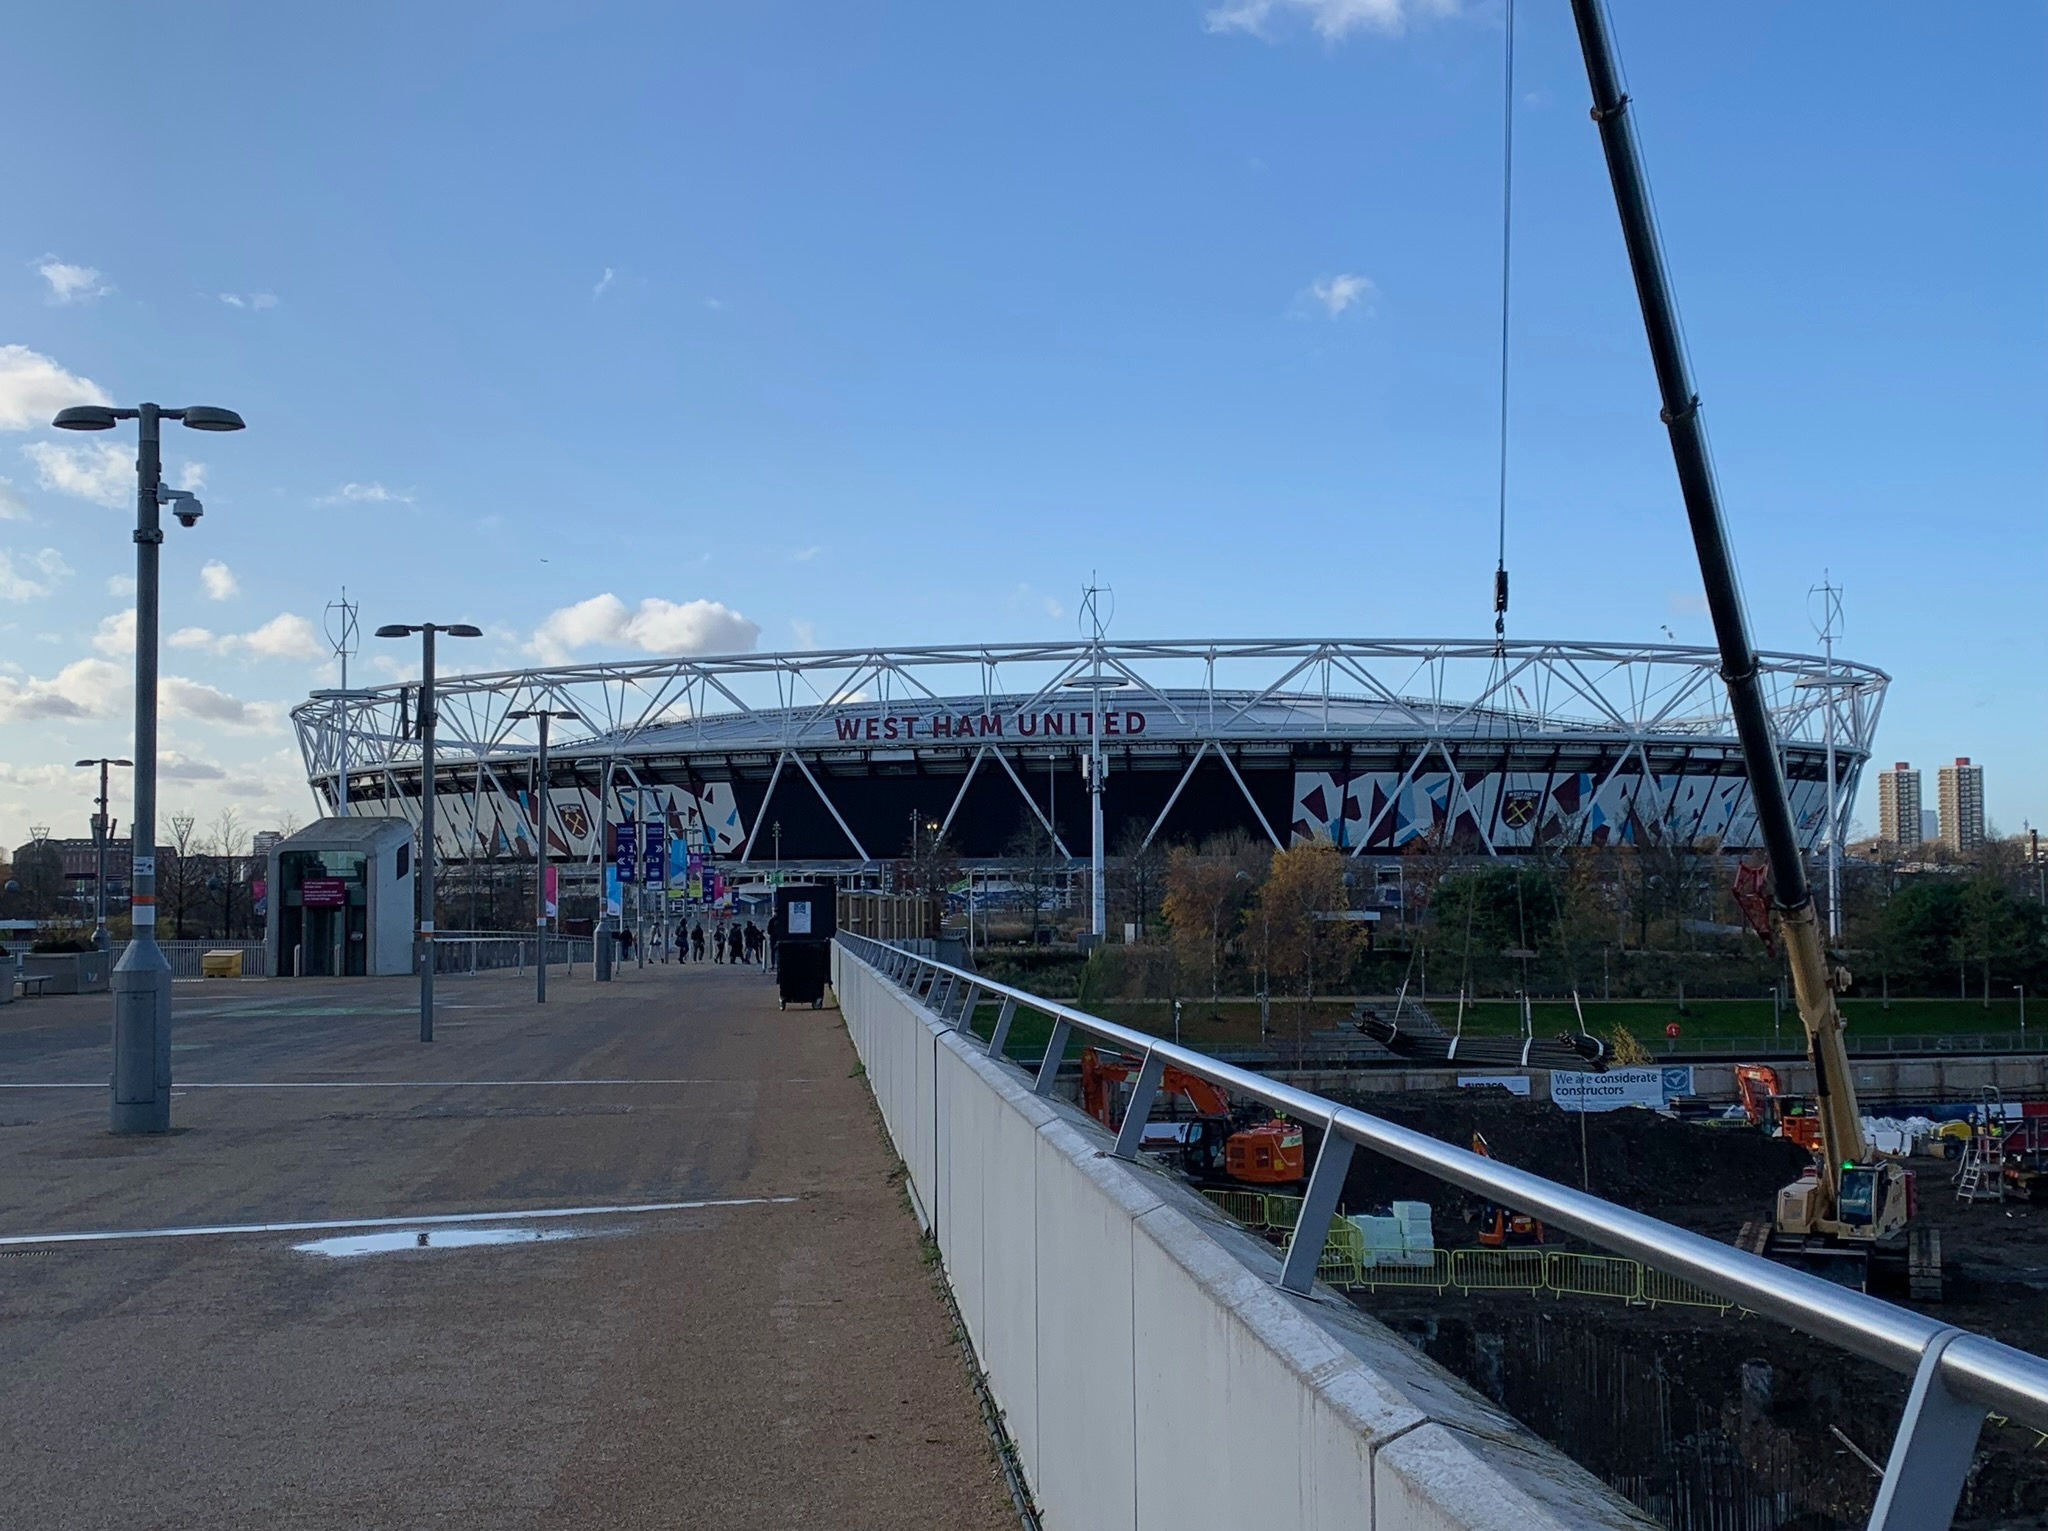 West Ham stadium at Olympic Park